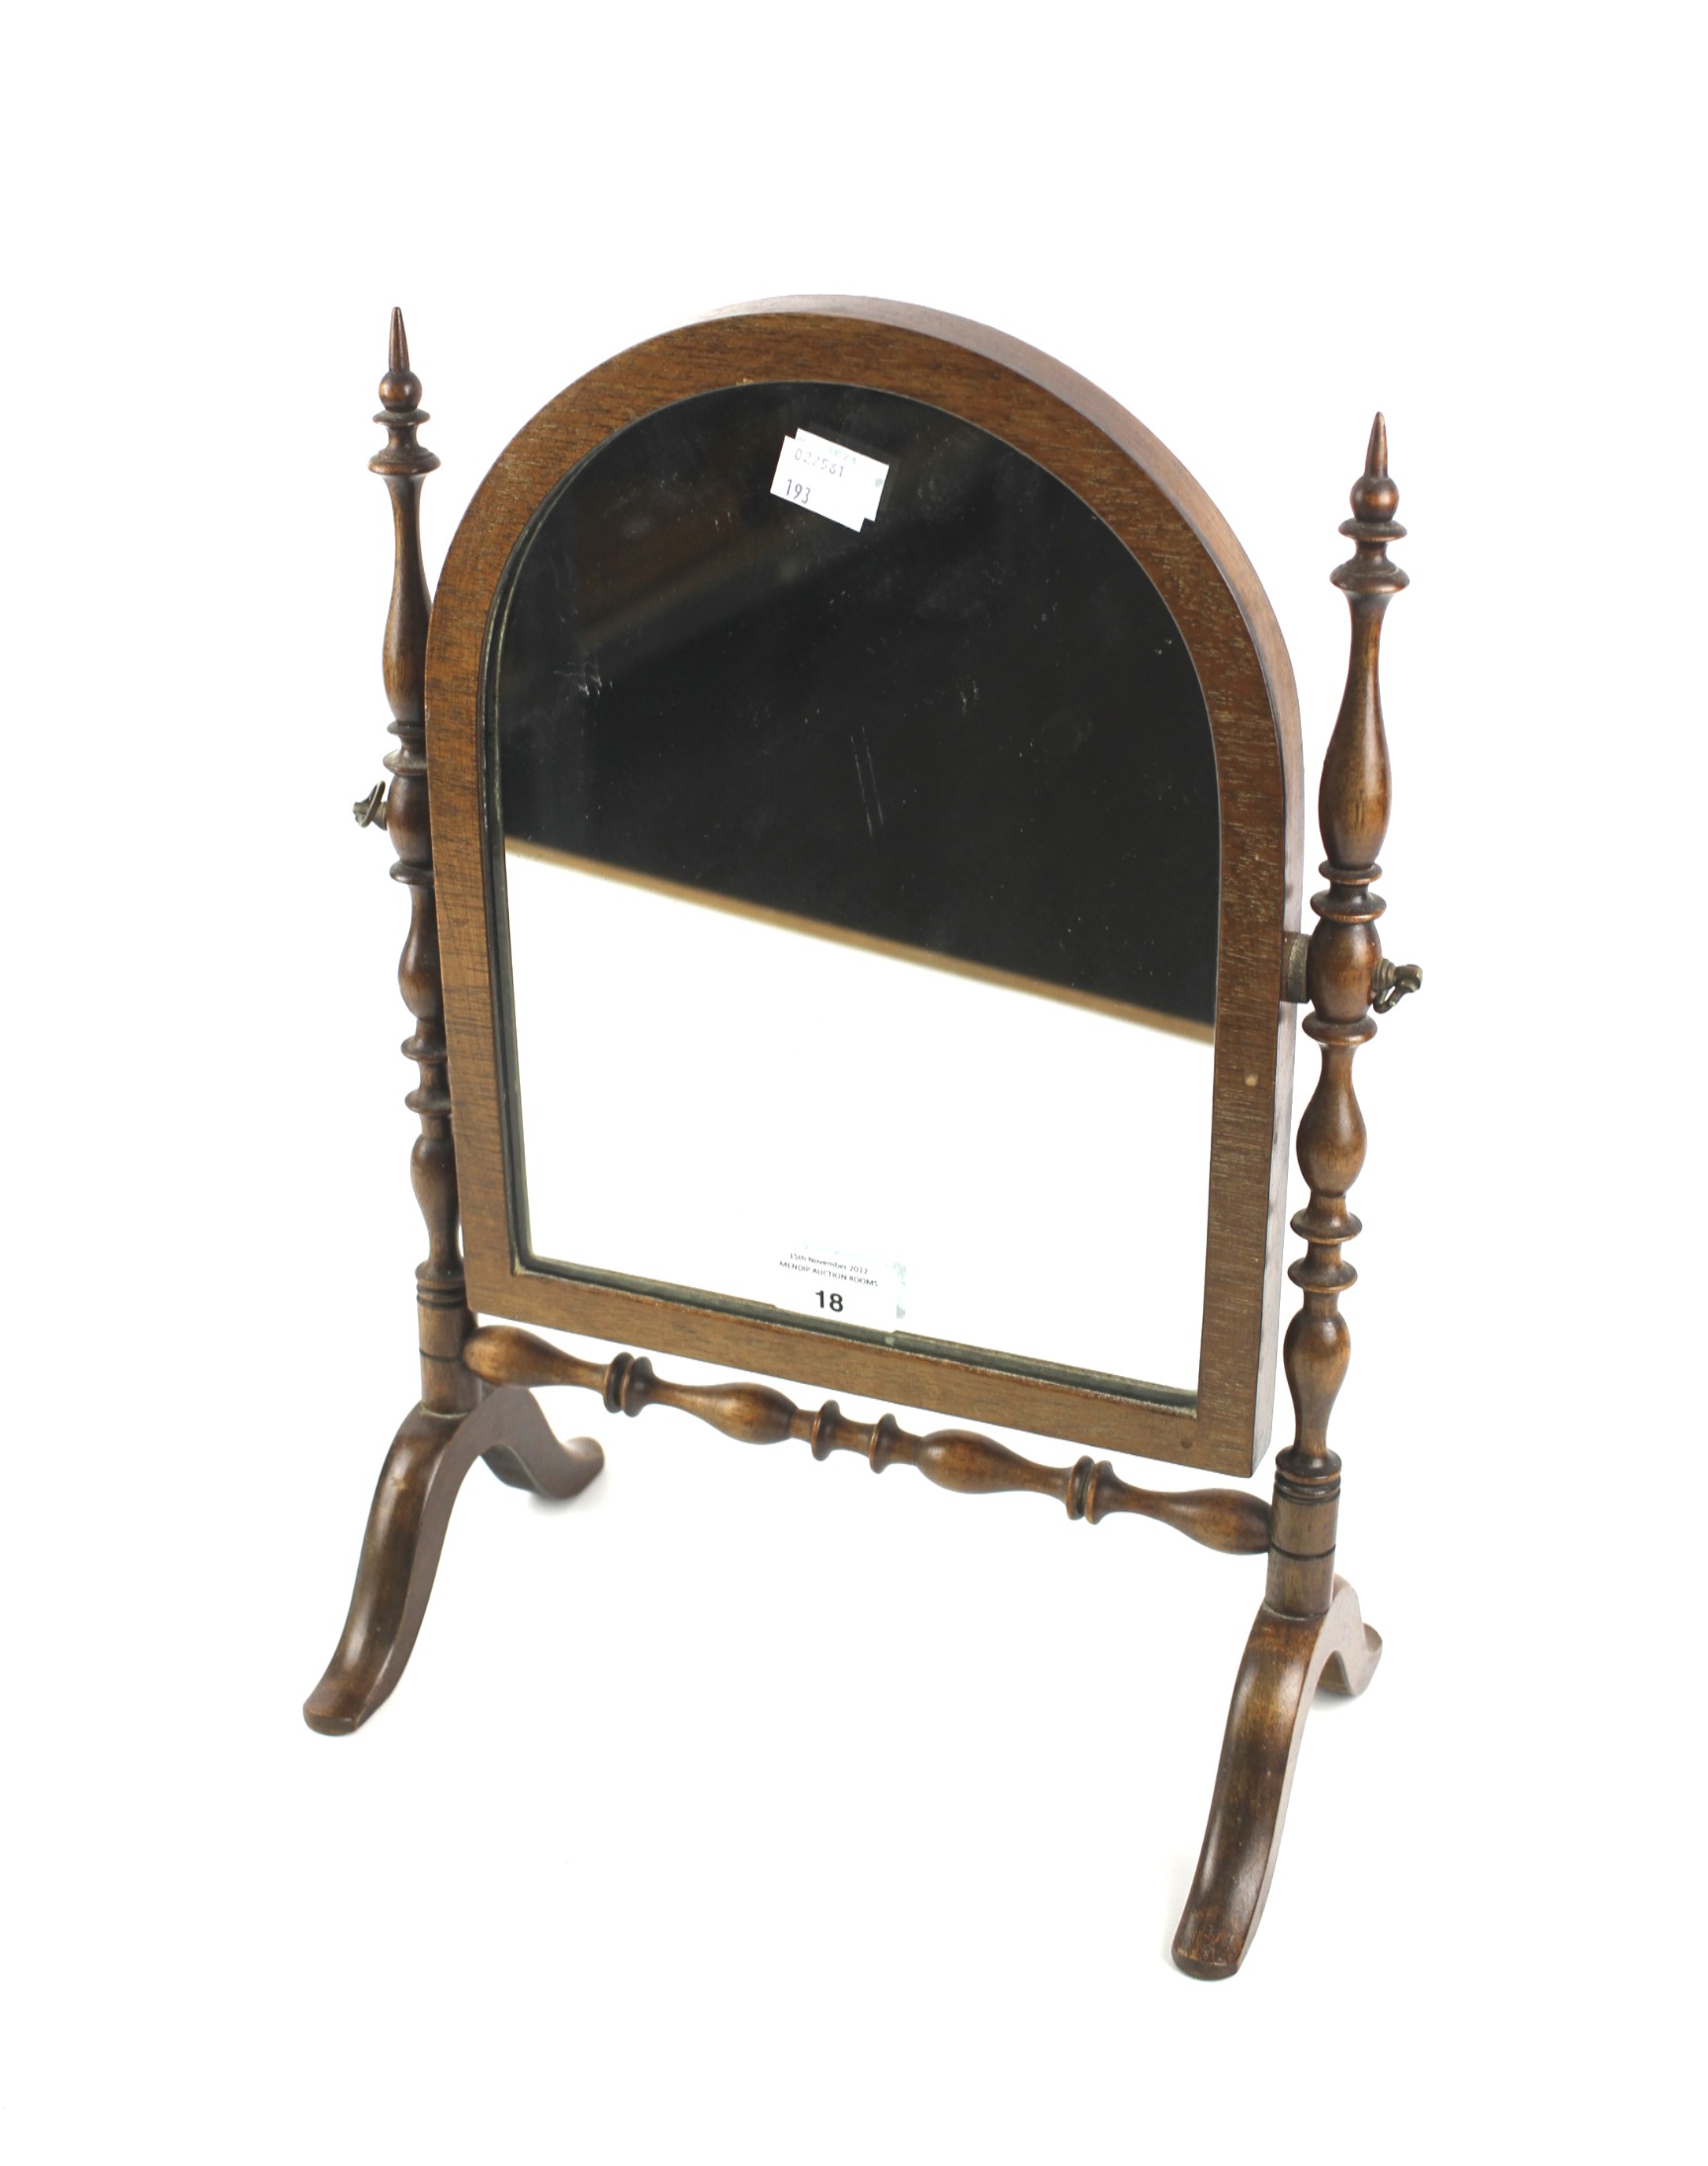 A 20th century mahogany dressing table mirror.